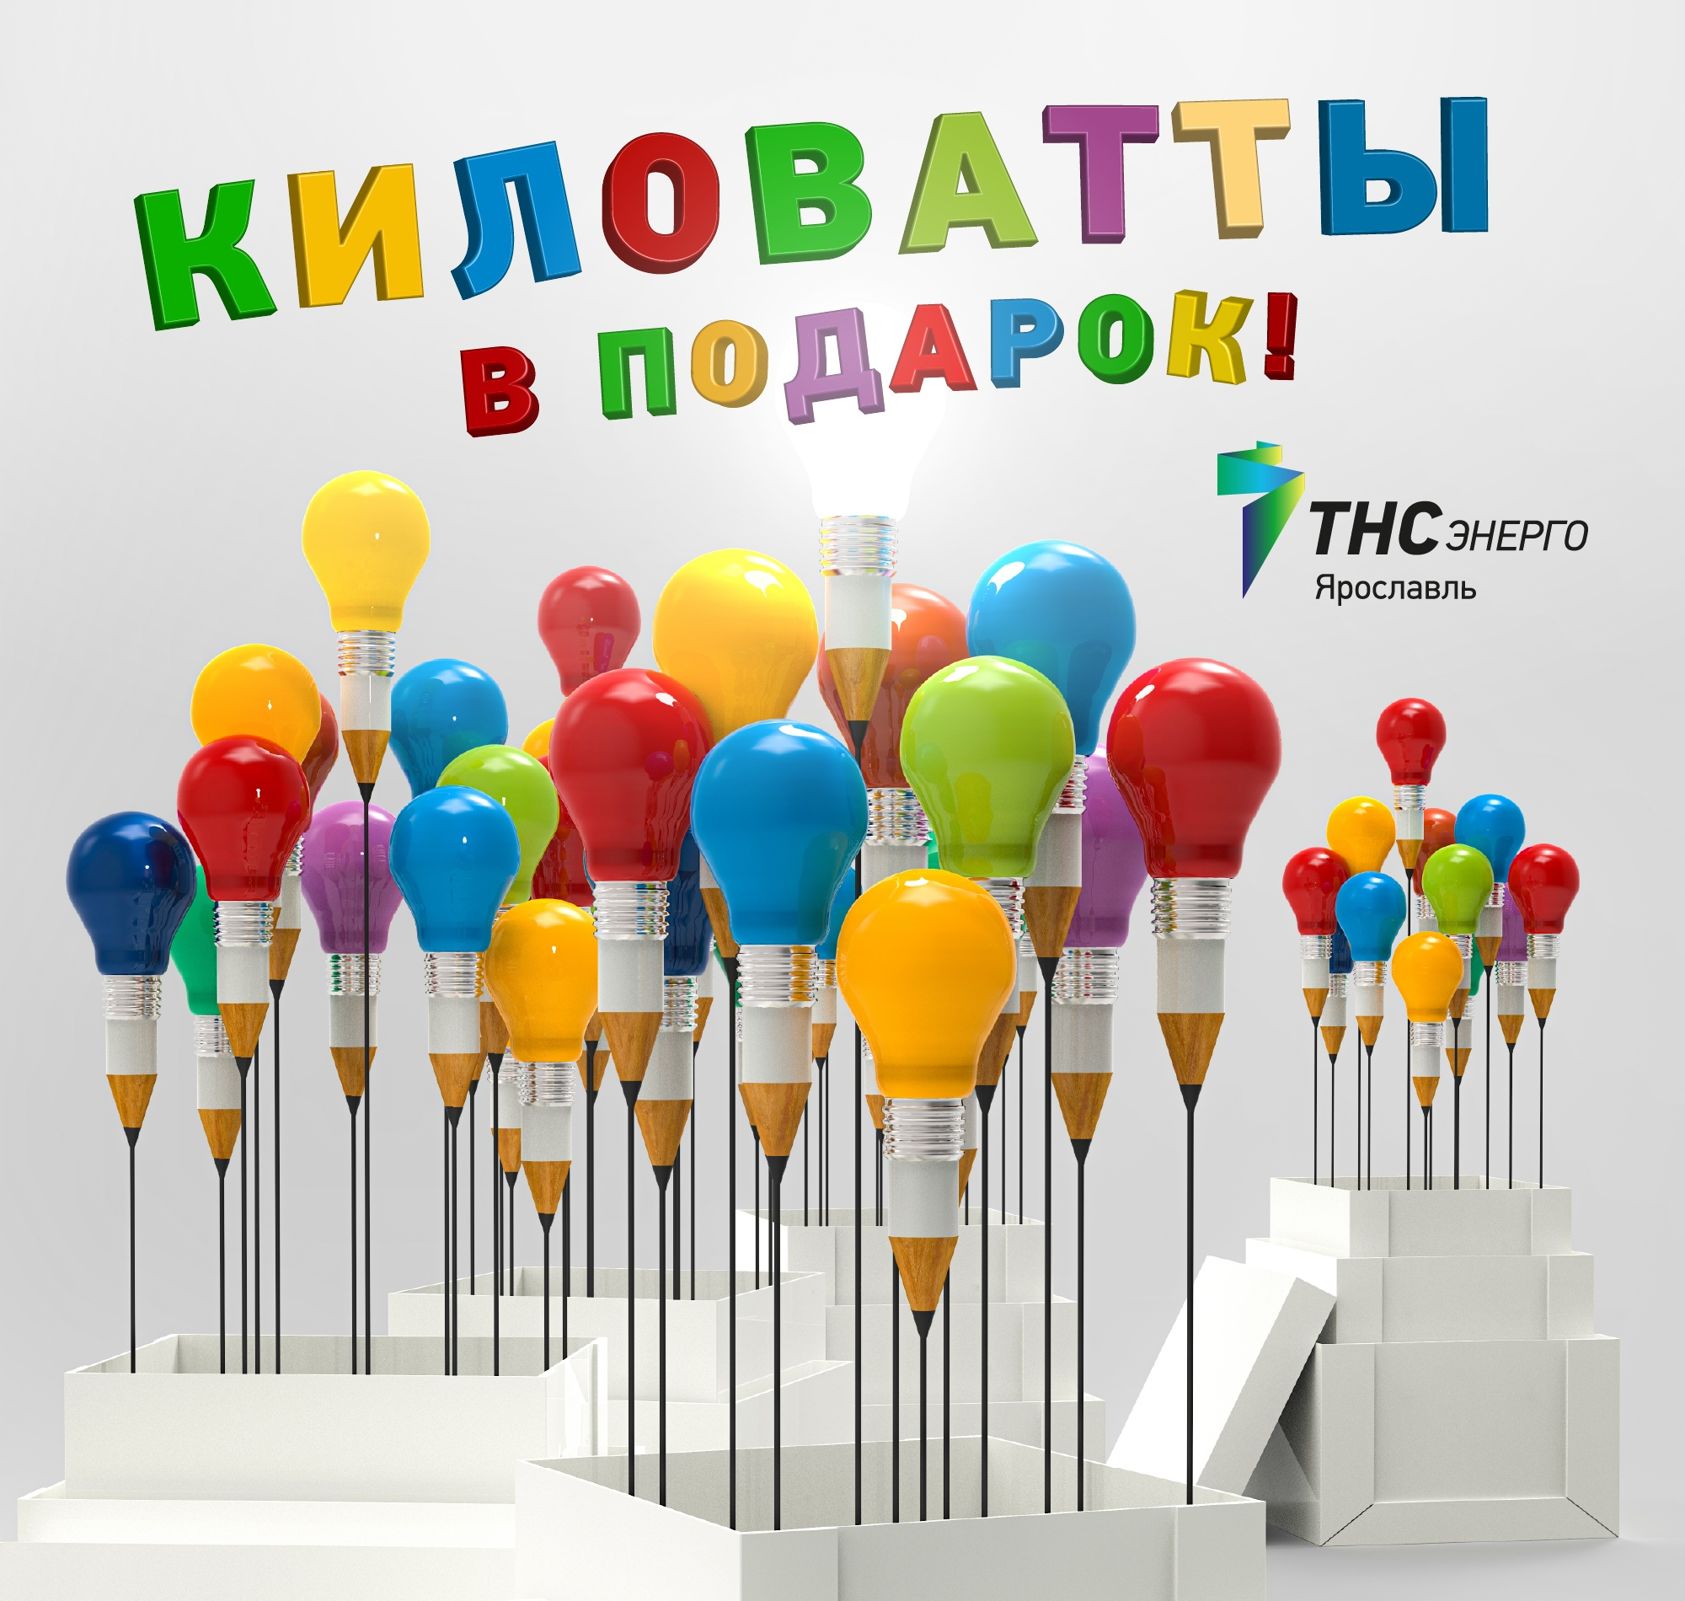 В «ТНС энерго Ярославль» определили победителей акции «Киловатты в подарок»